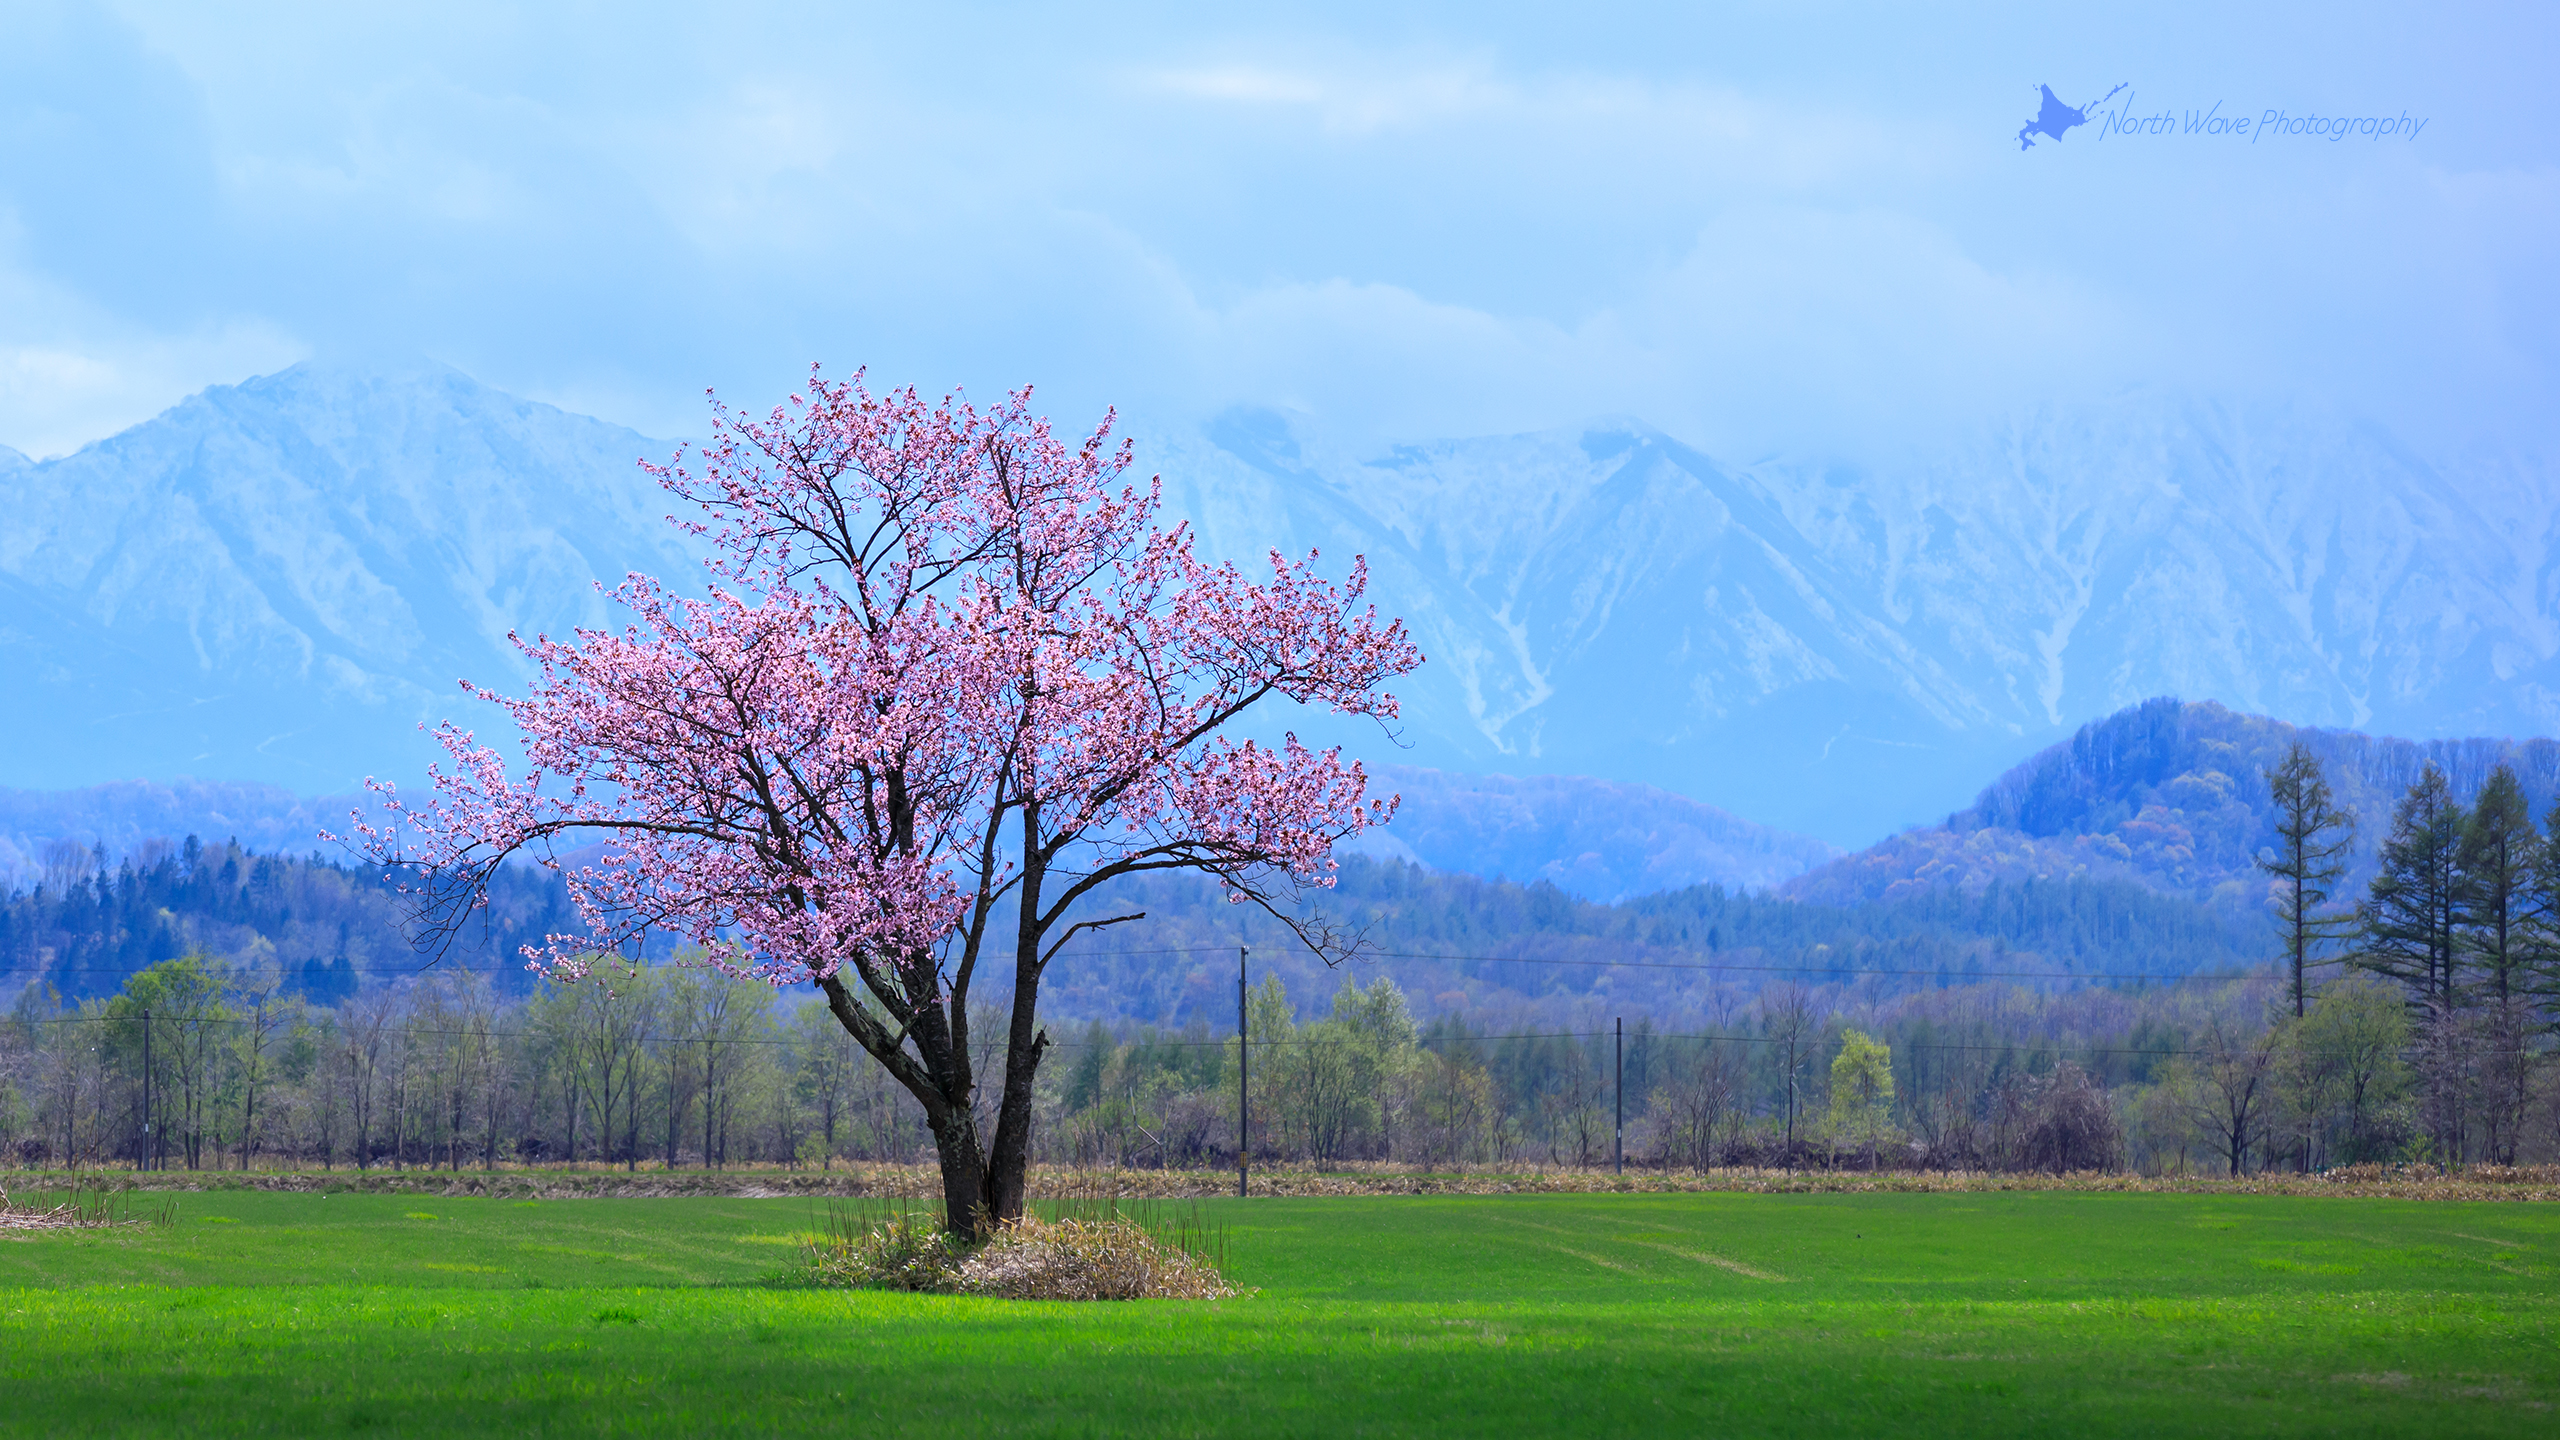 北海道の壁紙 一本桜と日高山脈 North Wave Photography